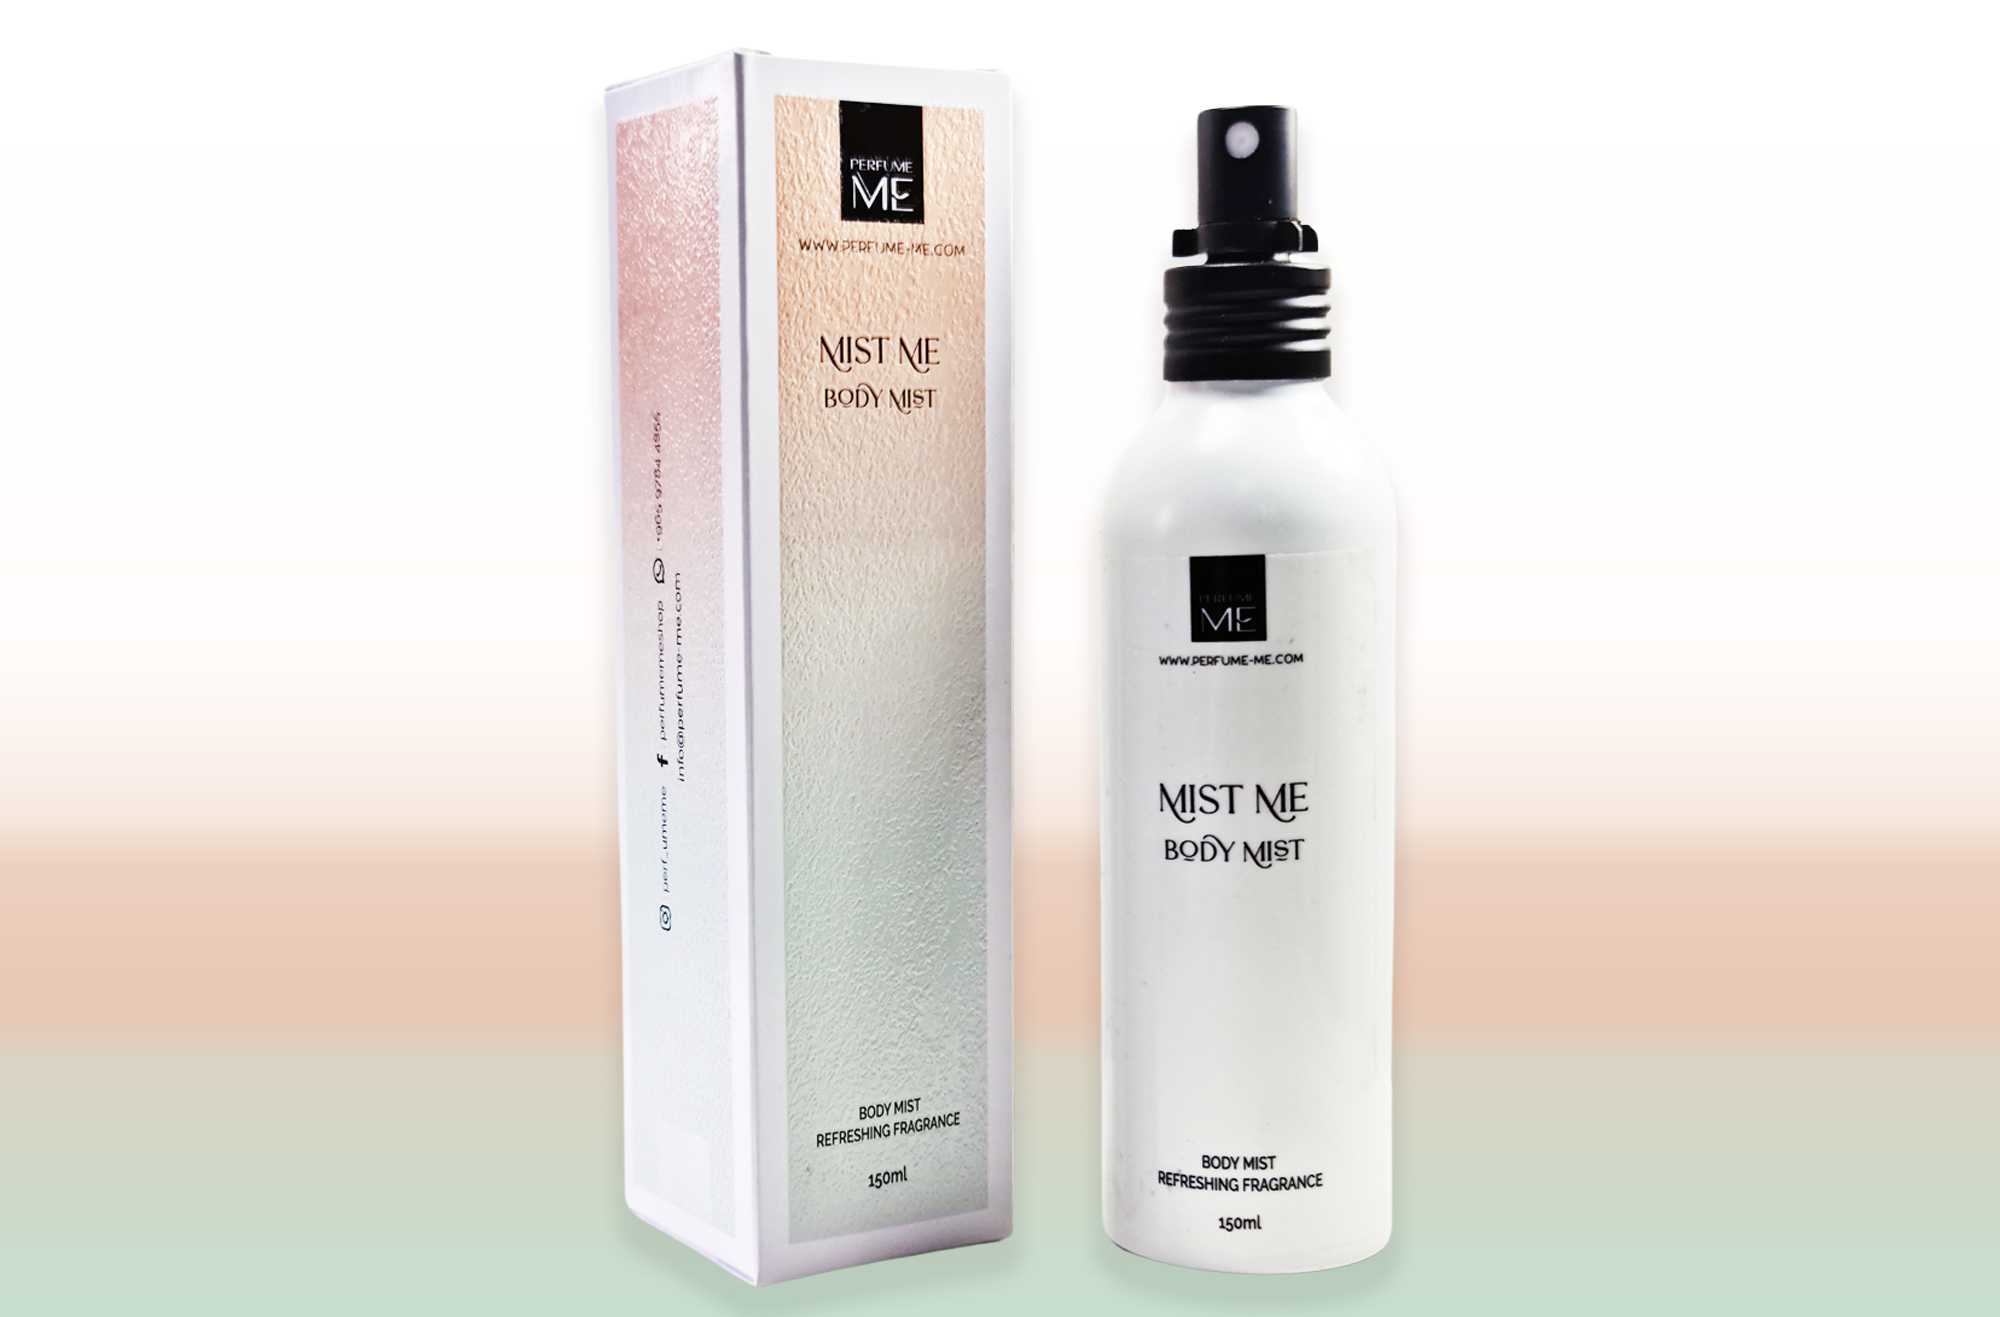 Perfume ME 407: Similar to L’Immensité by Louis Vuitton